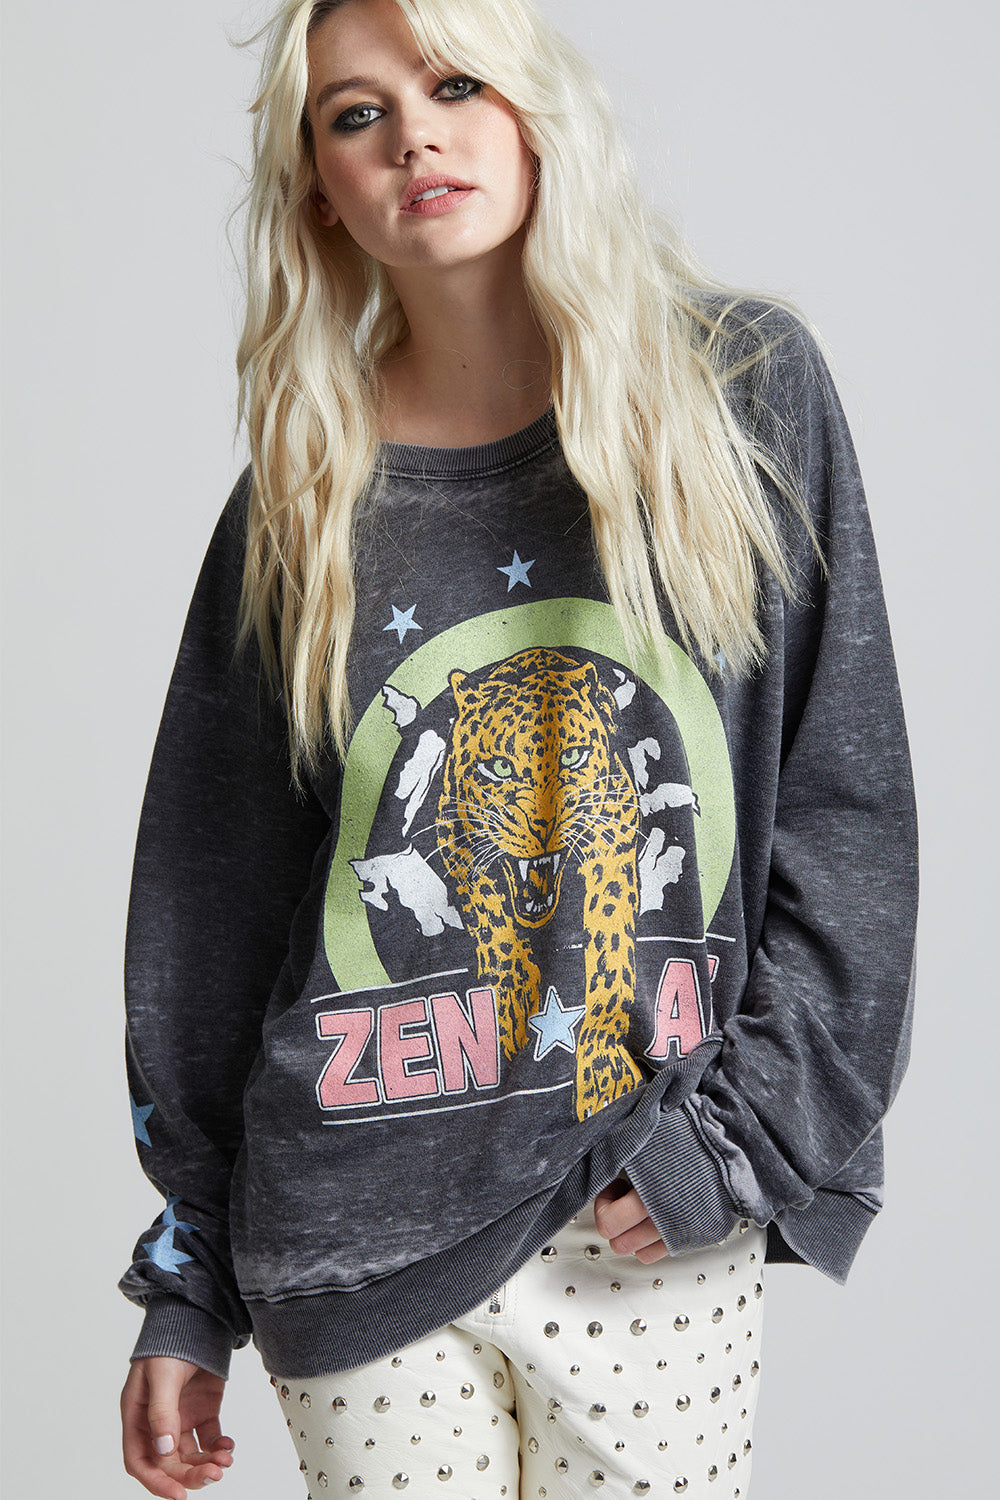 Zen AF Sweatshirt